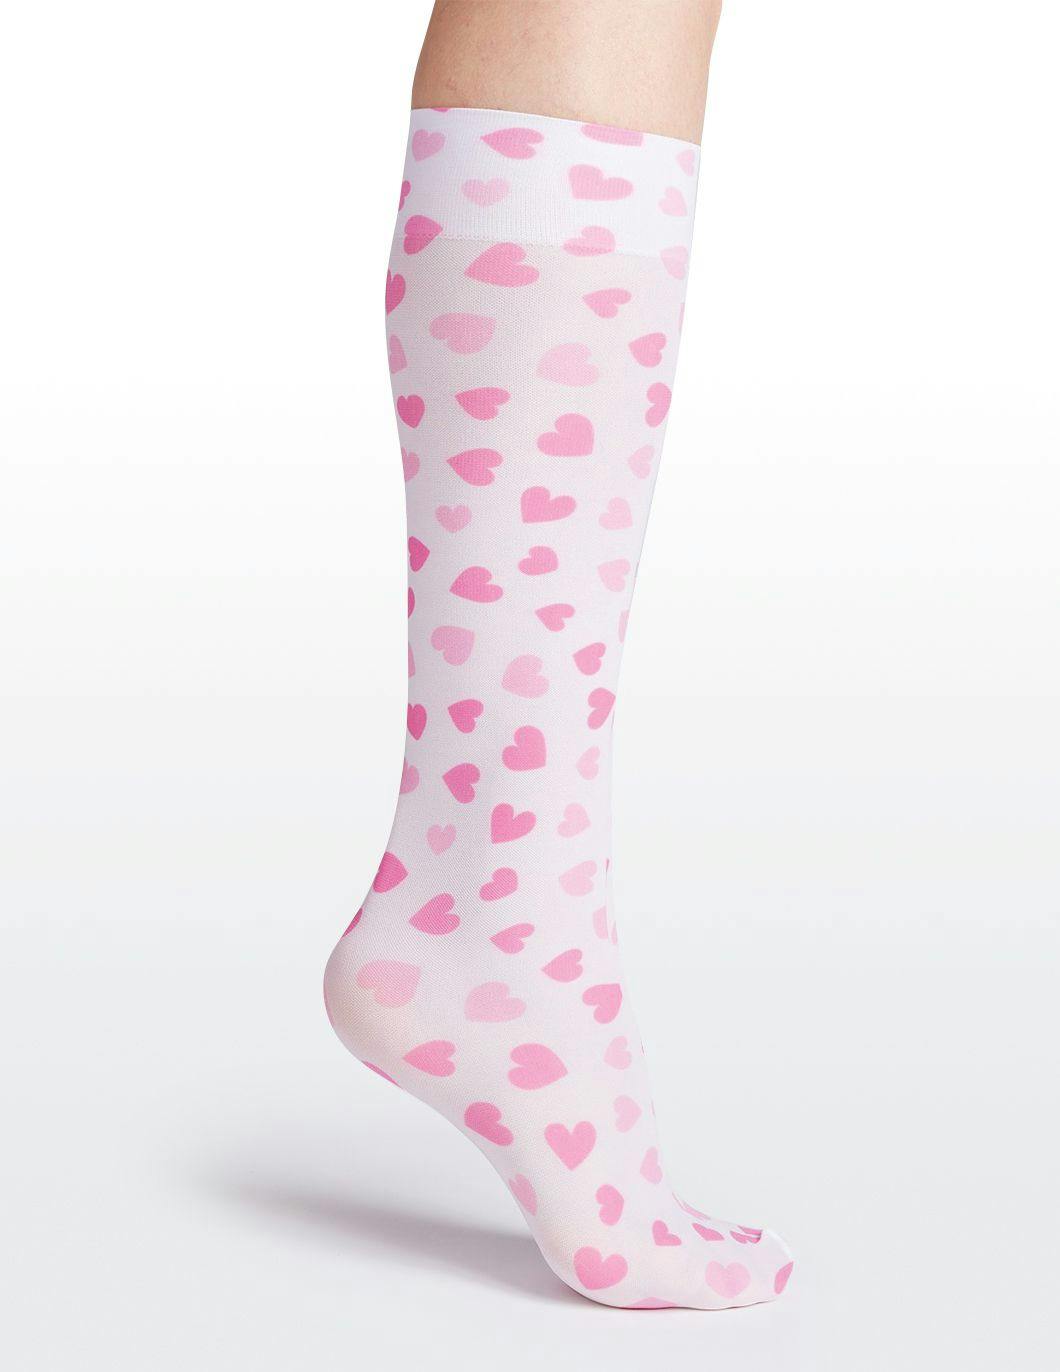 cuteiful-compression-socks-8-15-mmhg-cupid-hearts-print